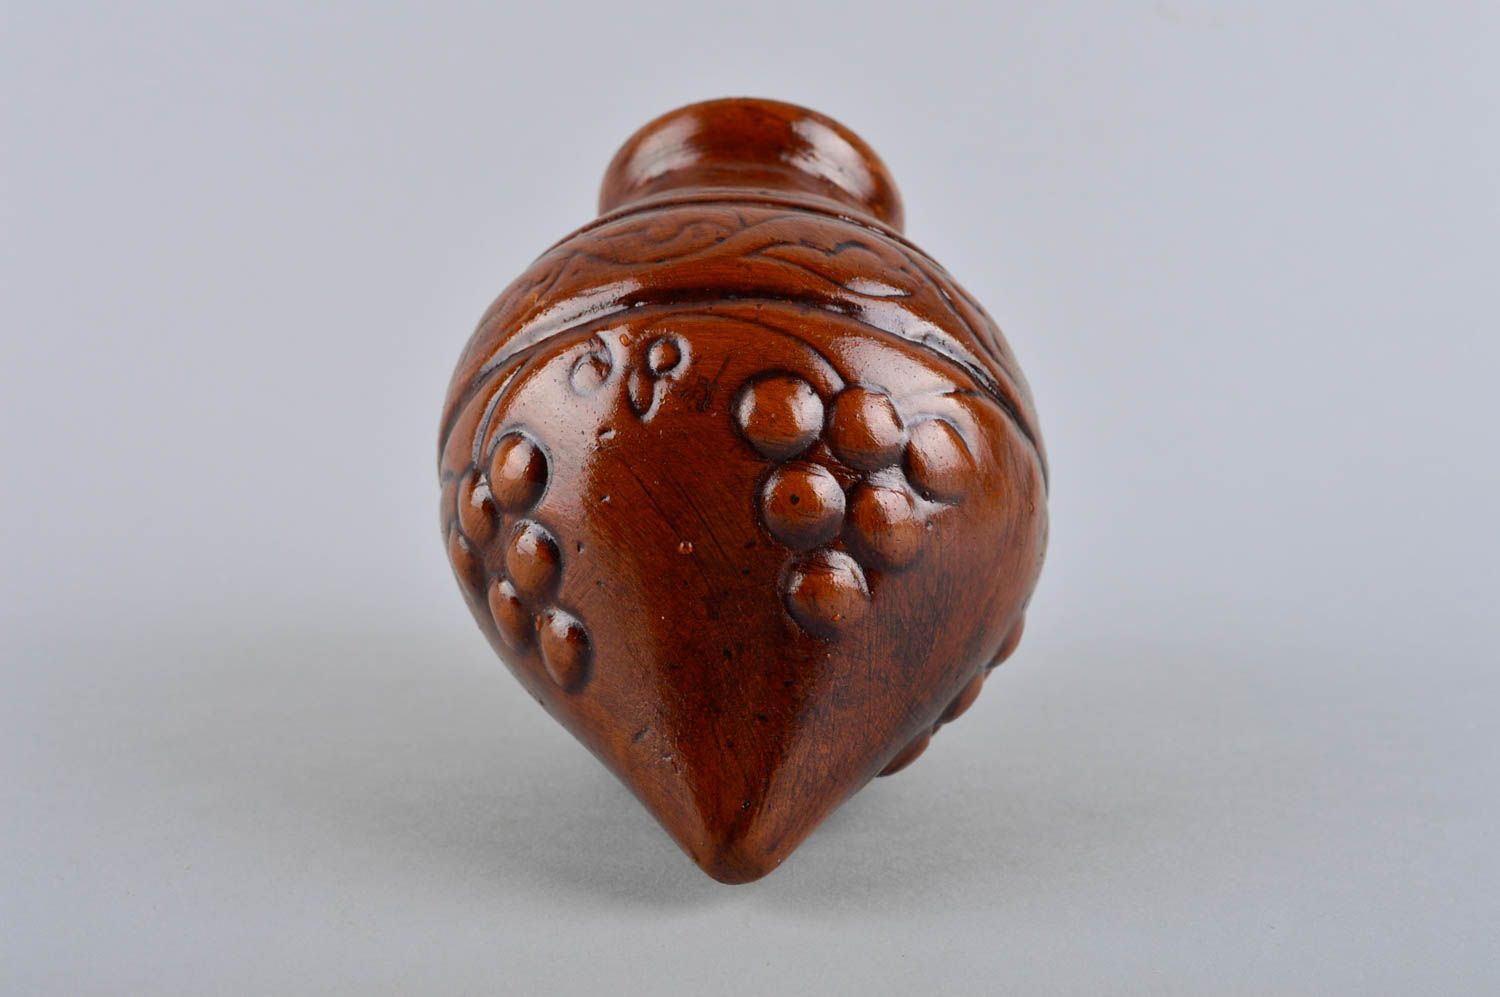 15 oz ceramic shelf decorative pitcher for home décor 0,6 lb photo 5